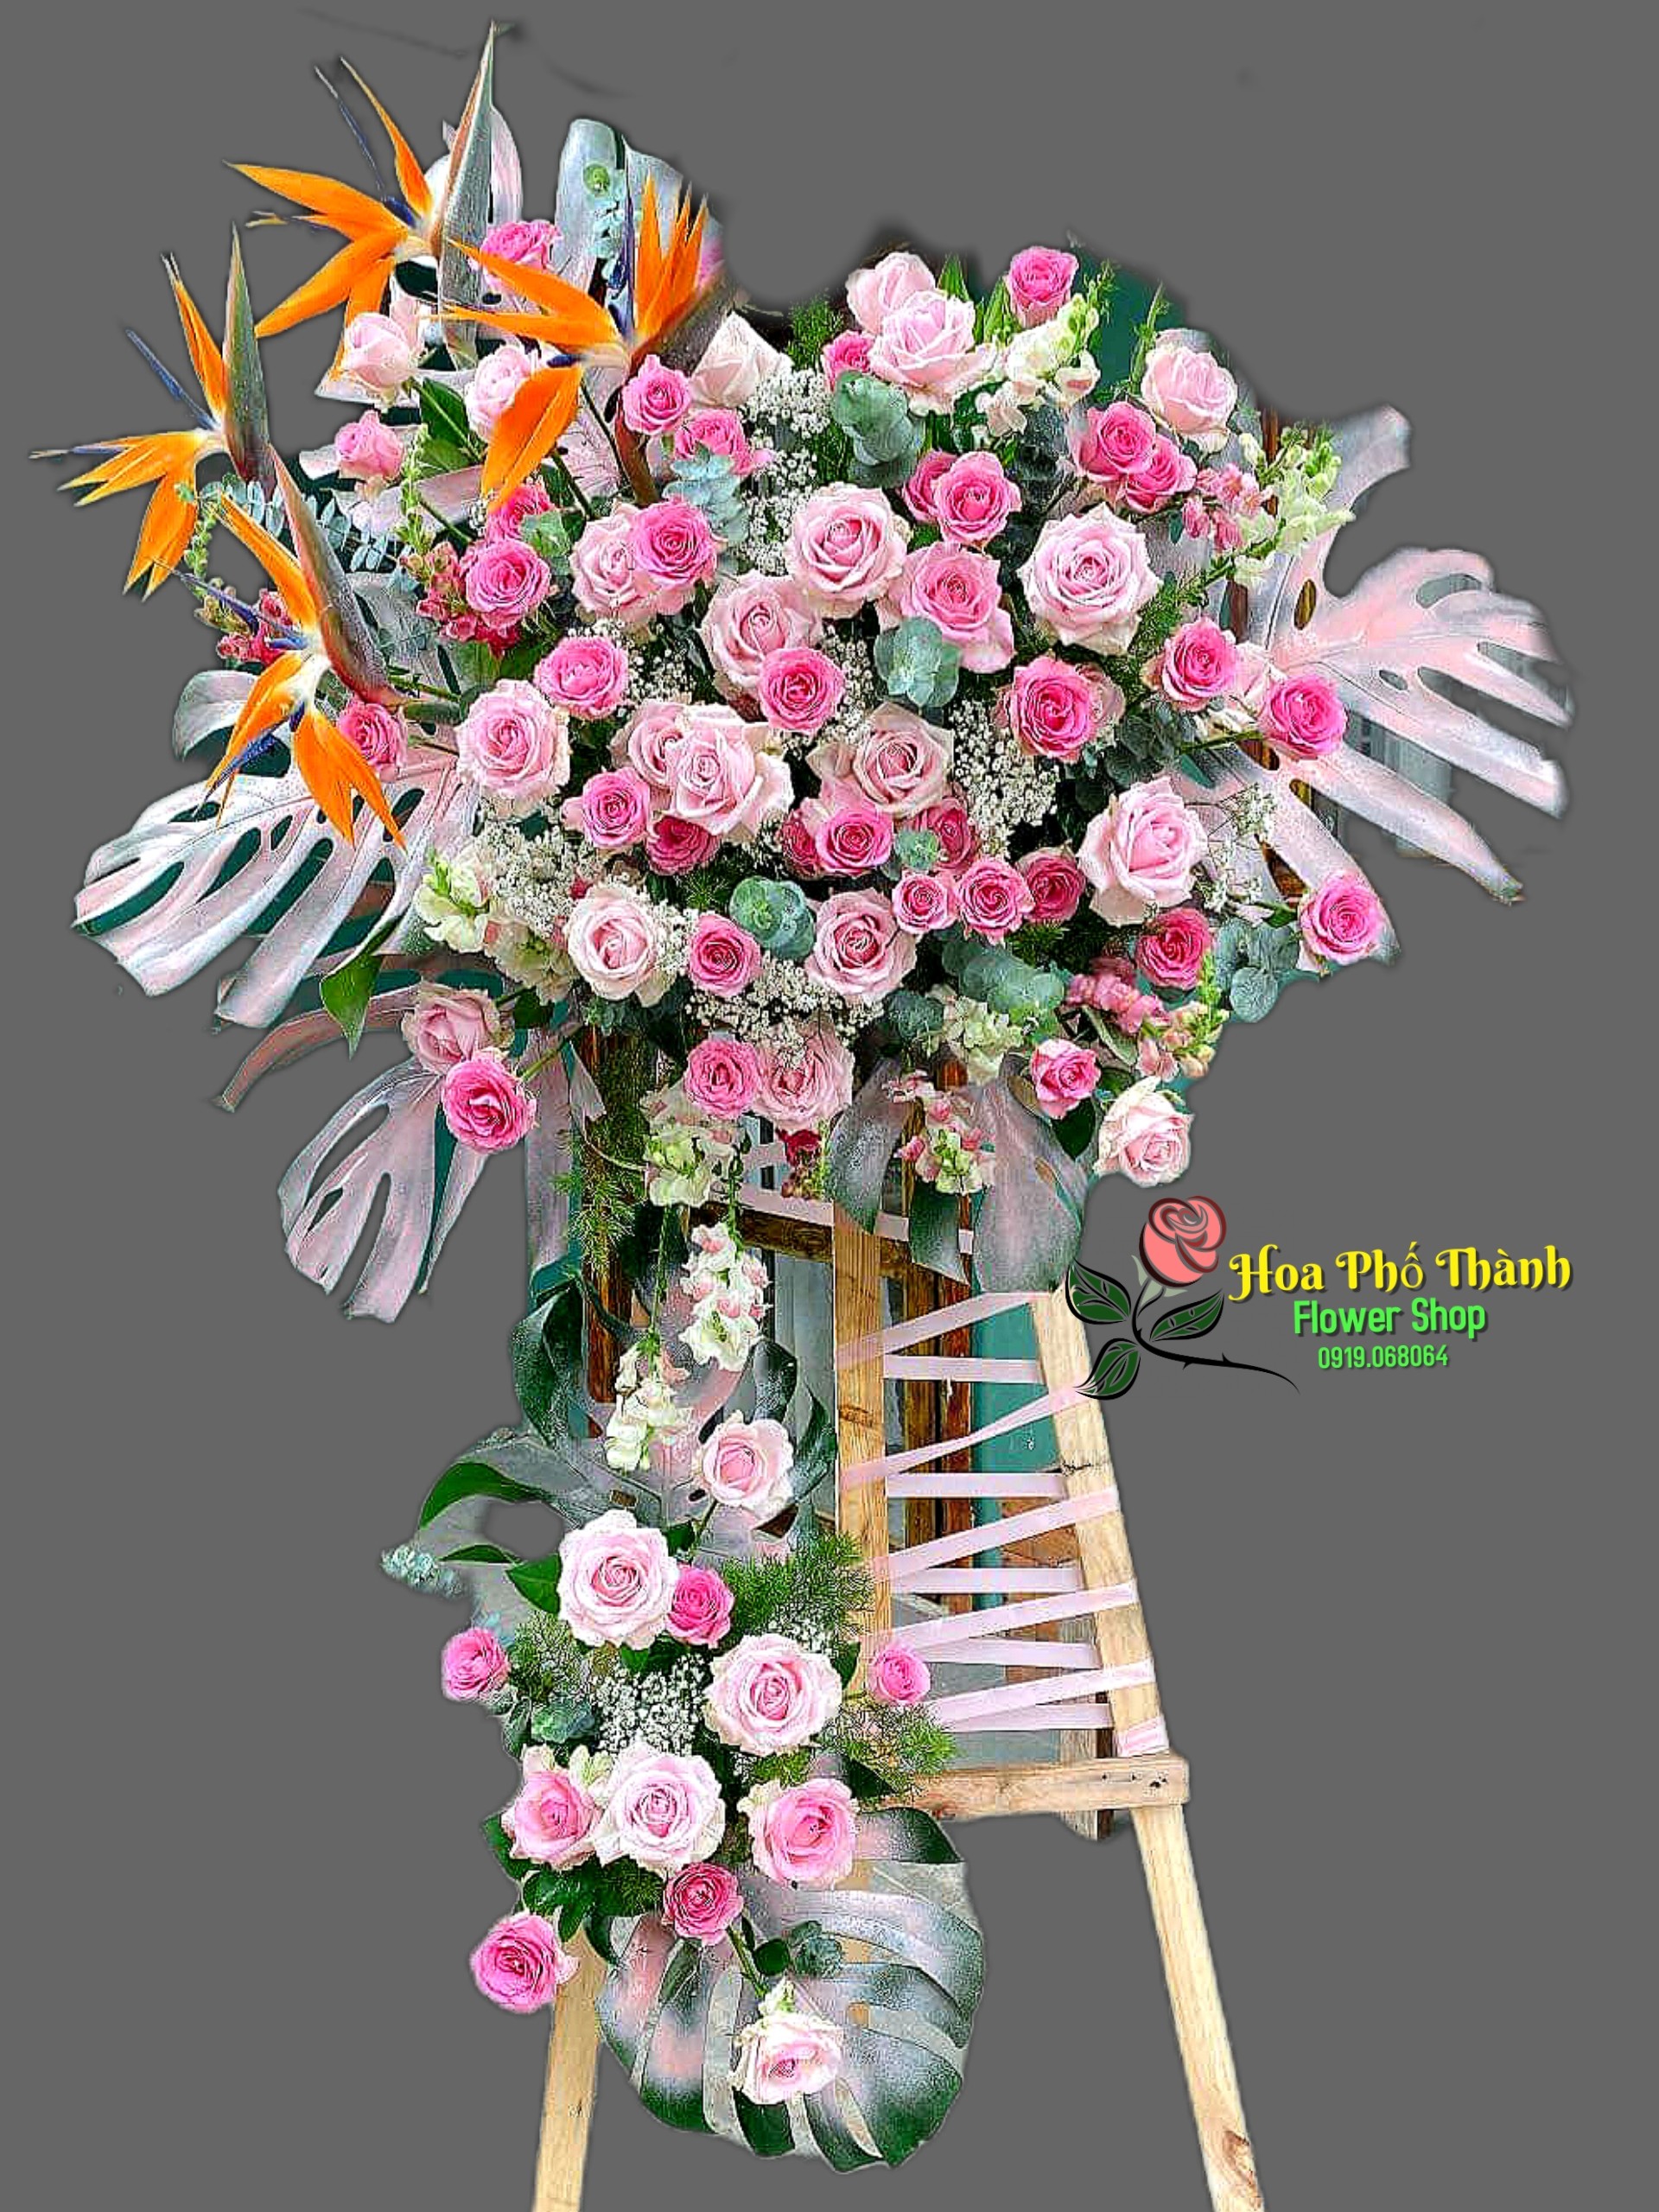 Mẫu hoa mừng khai trương tại Cửa hàng Hoa tươi Phường An Hòa  Rạch Giá Kiên Giang- Shop hoa tươi Phố Thành.